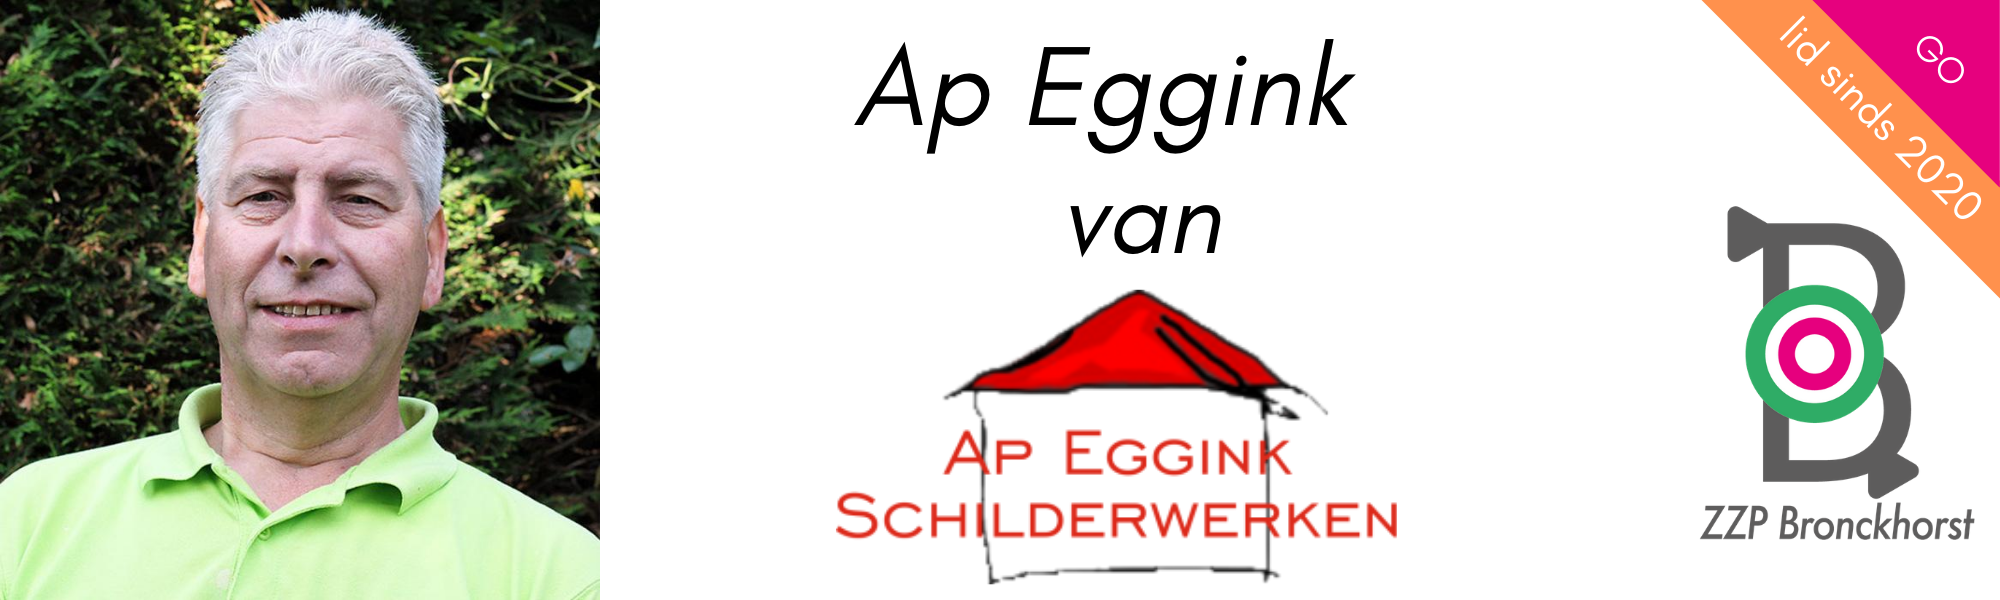 ap-eggink-schilderwerken-ruurlo-achterhoek-zzp-bronckhorst